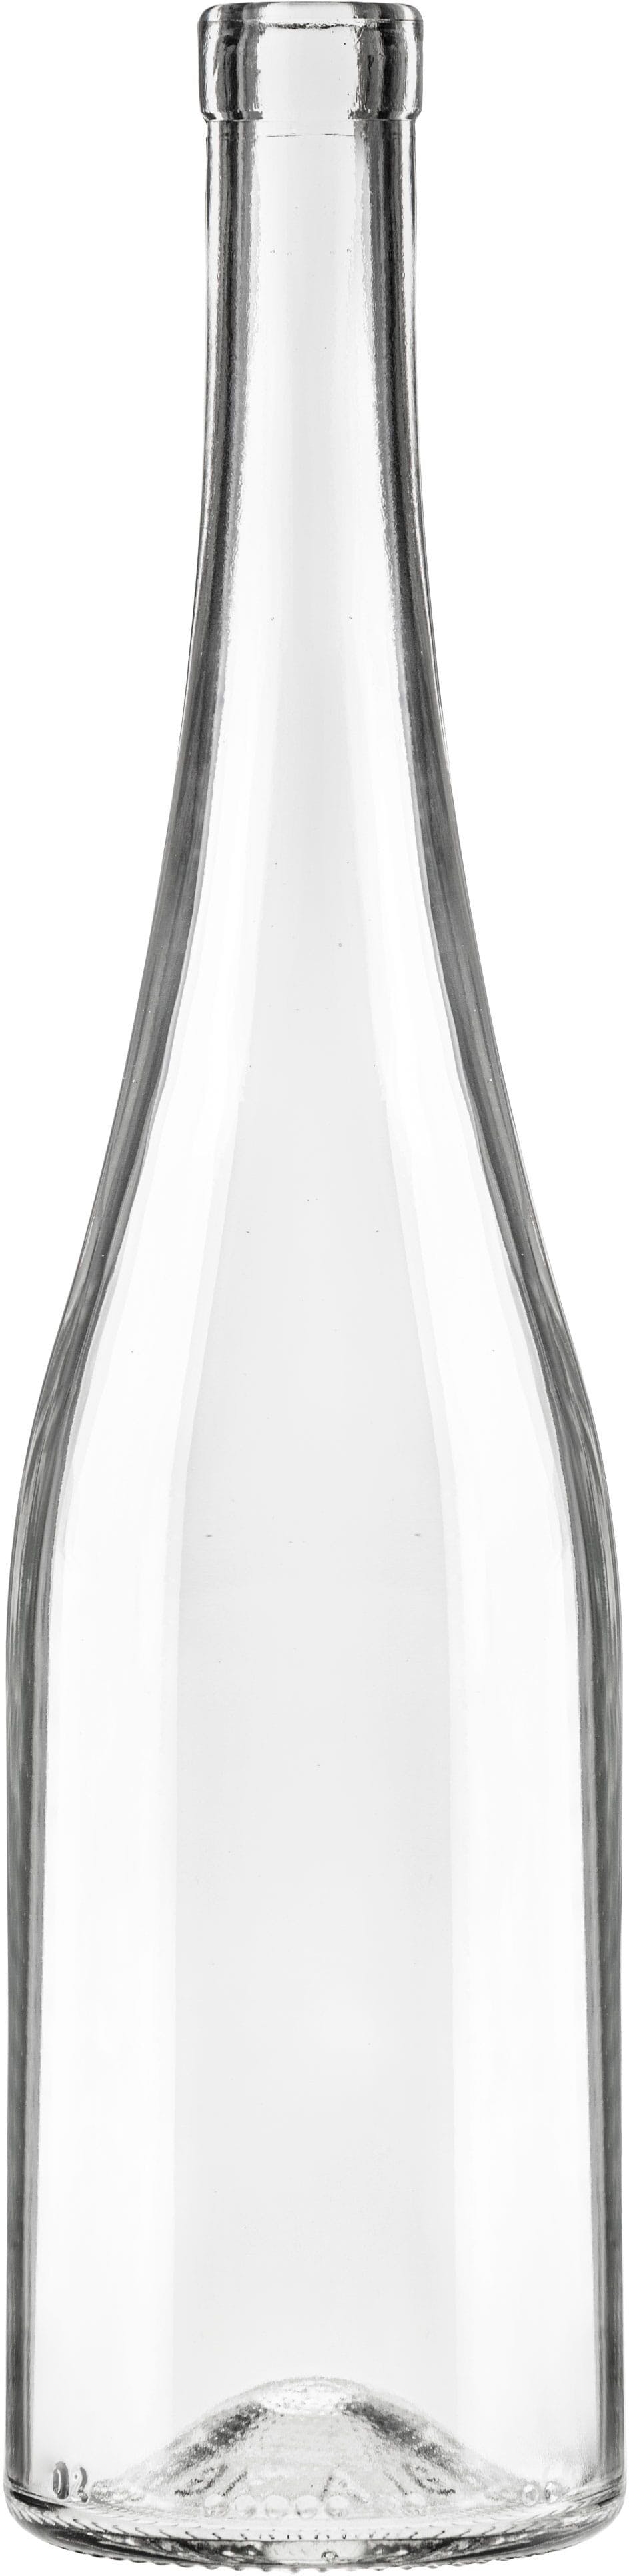 Bottiglia RENANA NOUVELLE 750 ml BG-Sughero